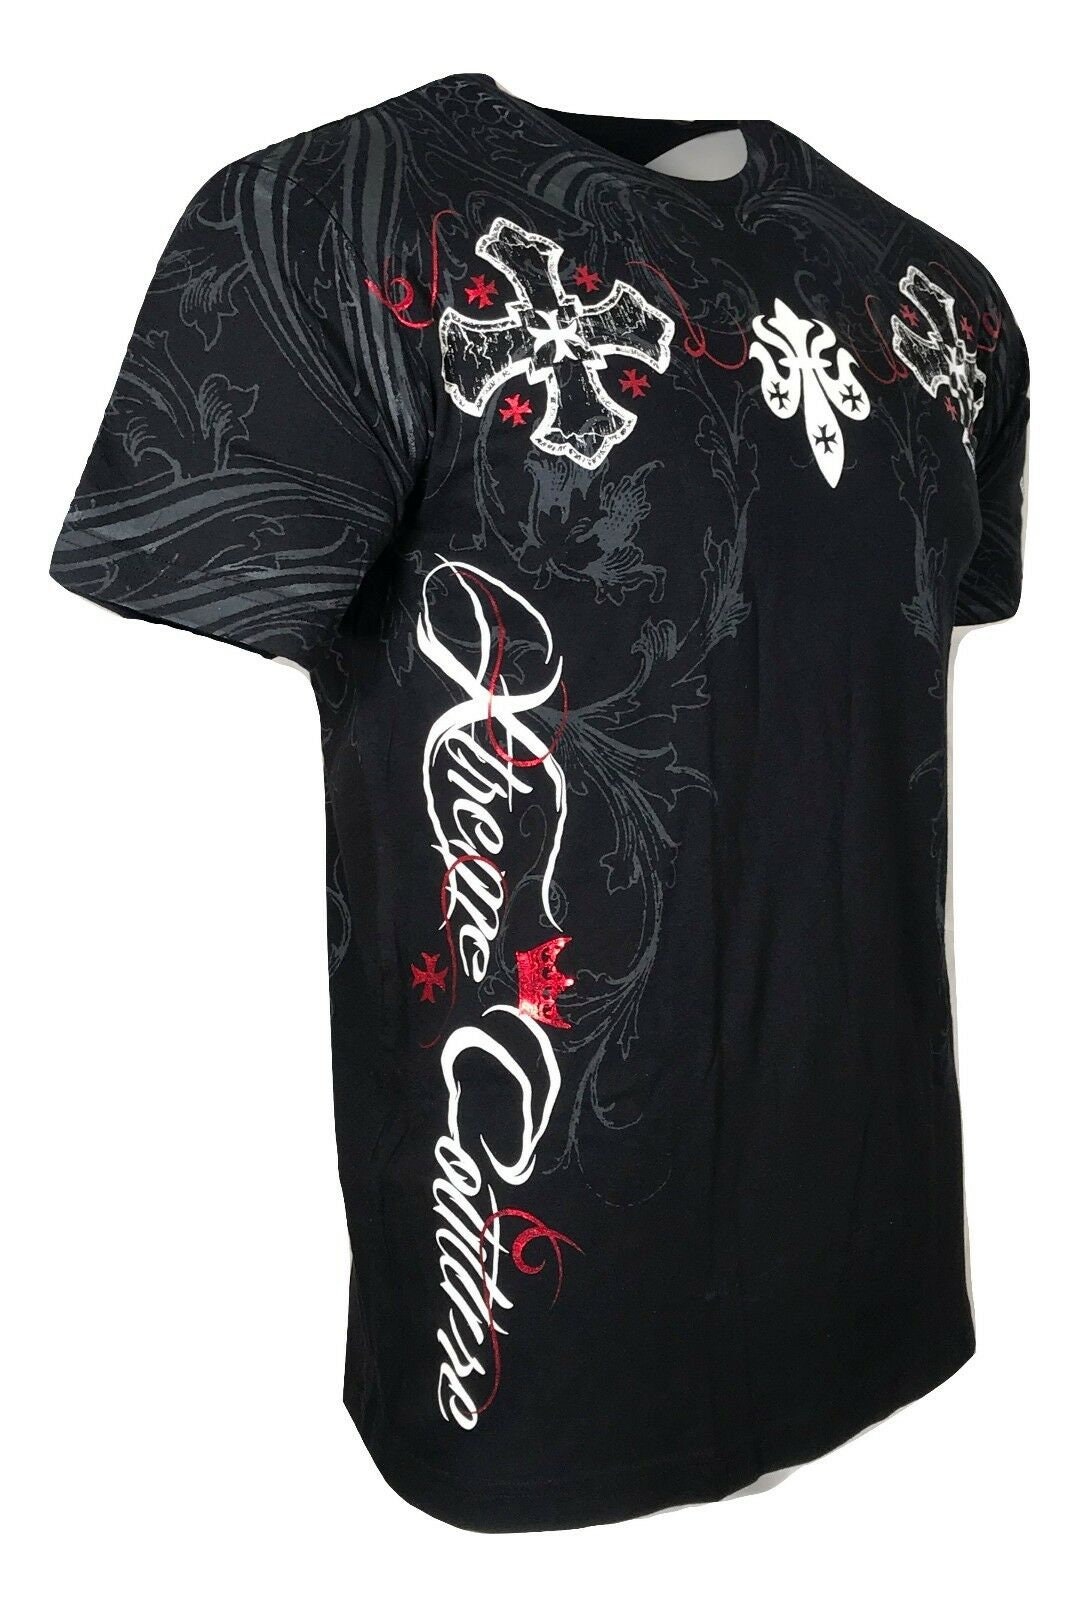 Camiseta para hombre y mujer, camisa Unisex con estampado de murciélago,  pan de carne, fuera del infierno, motocicleta, color negro, S-5Xl -  AliExpress